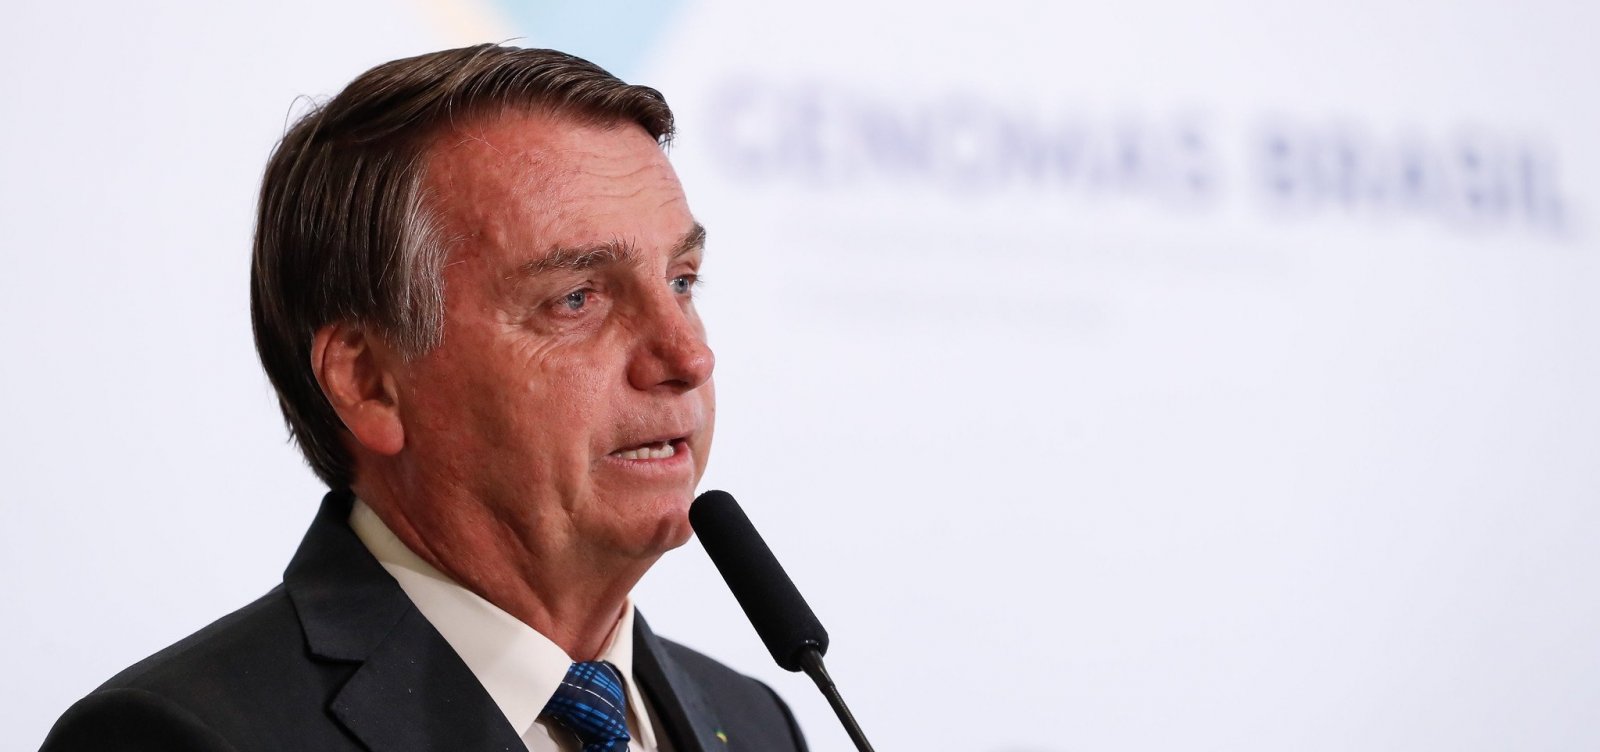 'Orgulho para o governo', diz Bolsonaro sobre operação que flagrou aliado com dinheiro na cueca